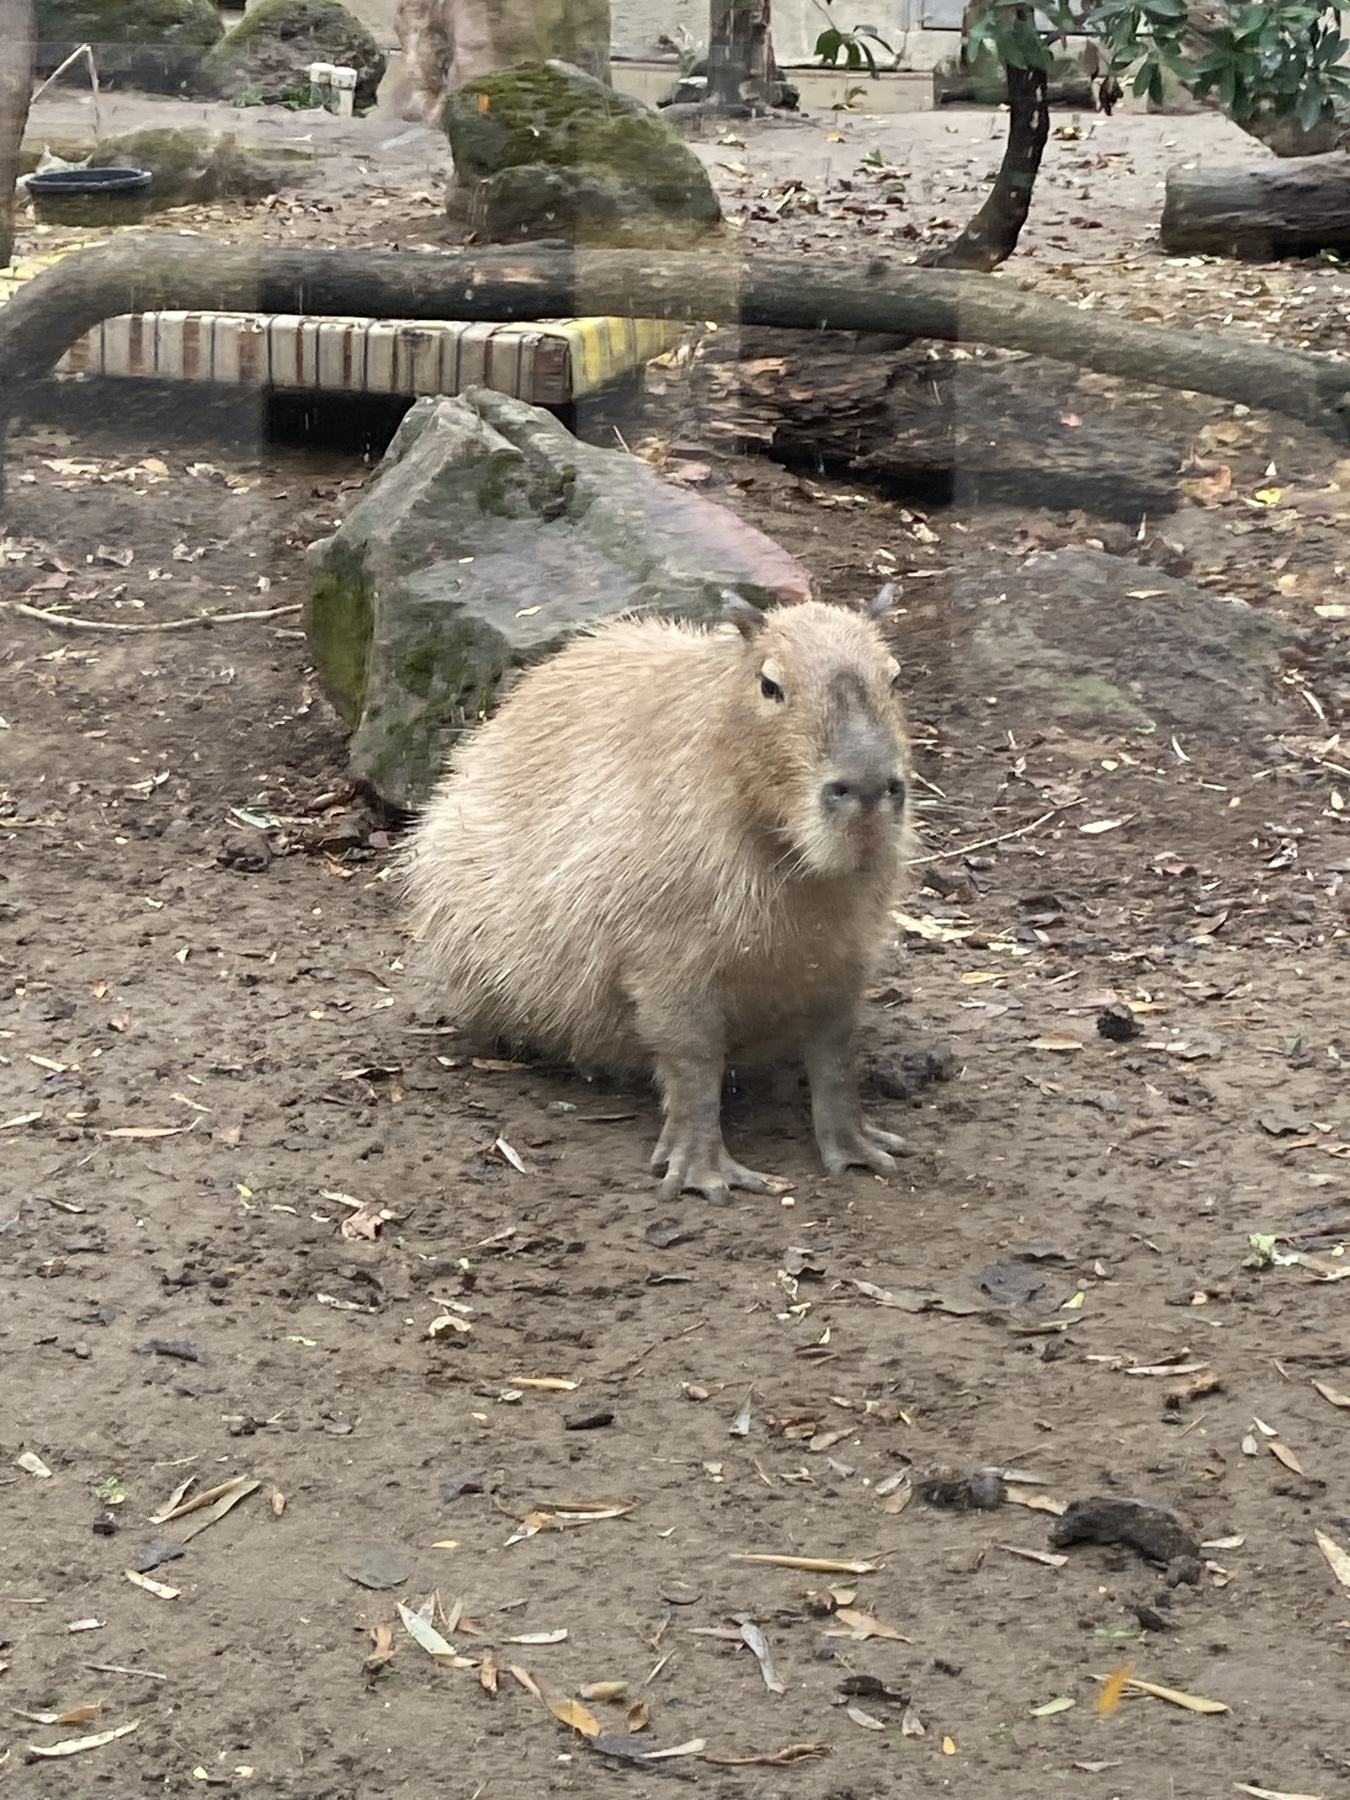 A capybara looking at me. 